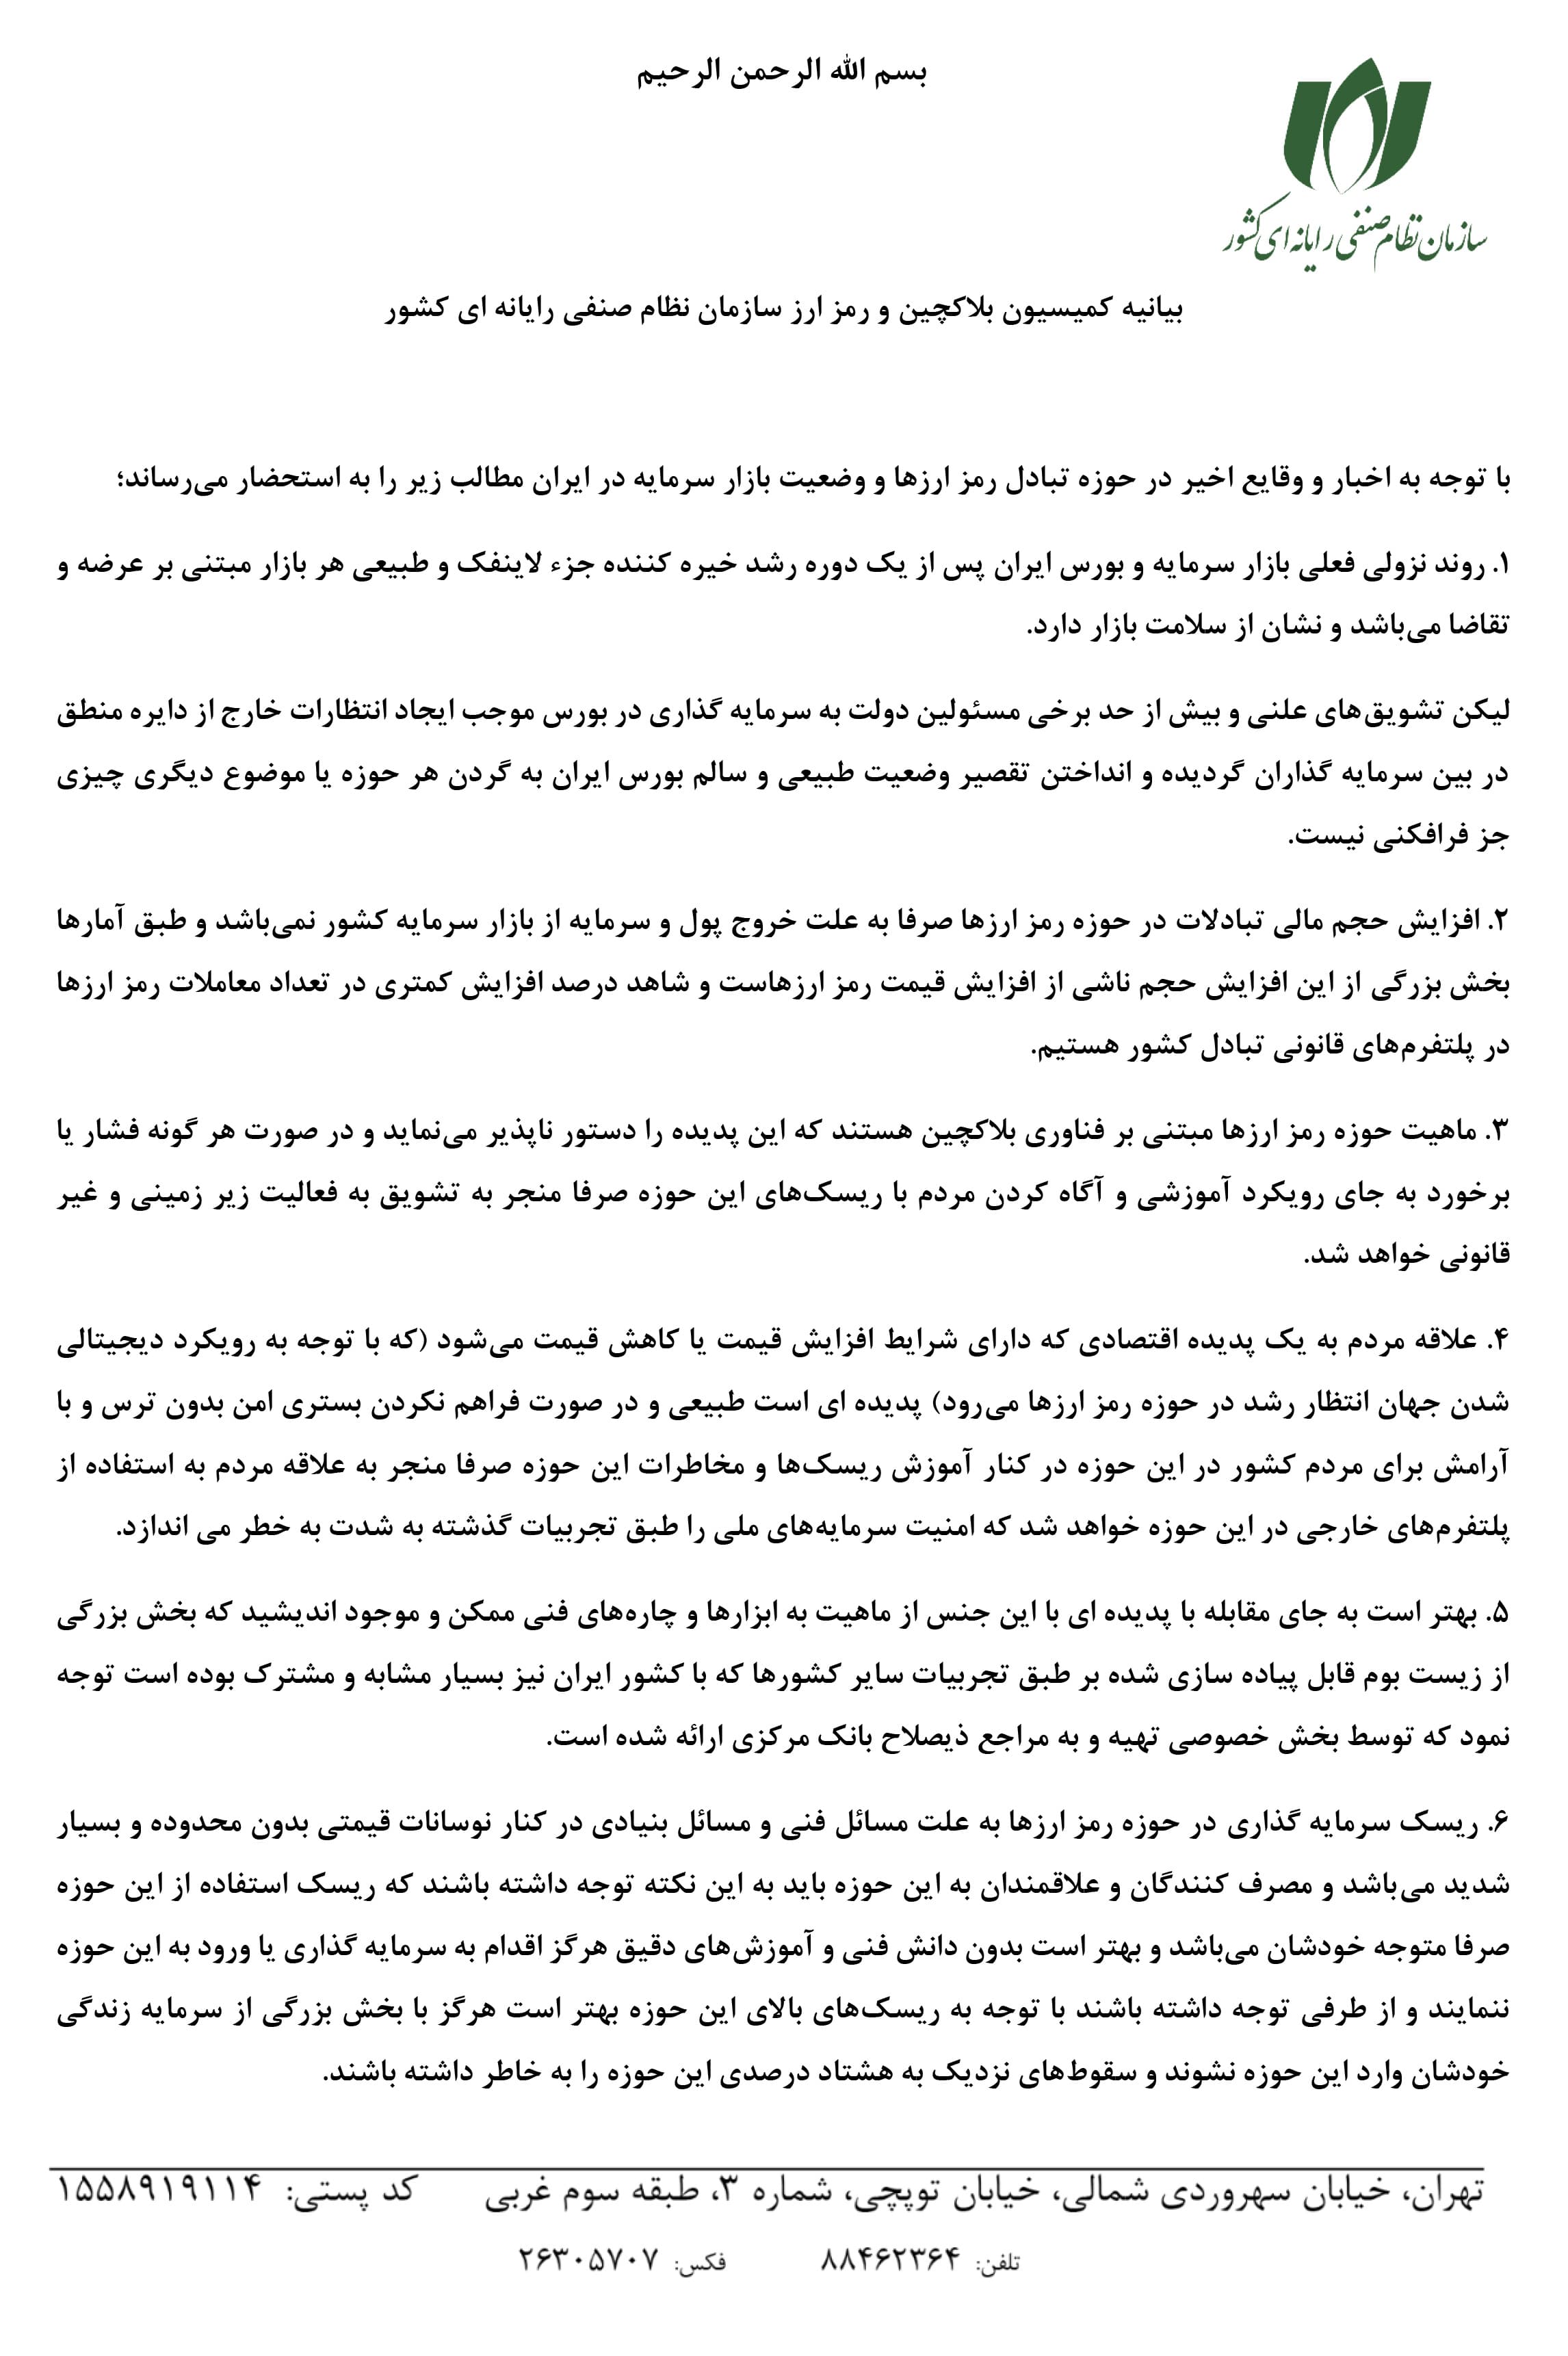 بیانیه کمیسیون رمزارز و بلاکچین سازمان نصر